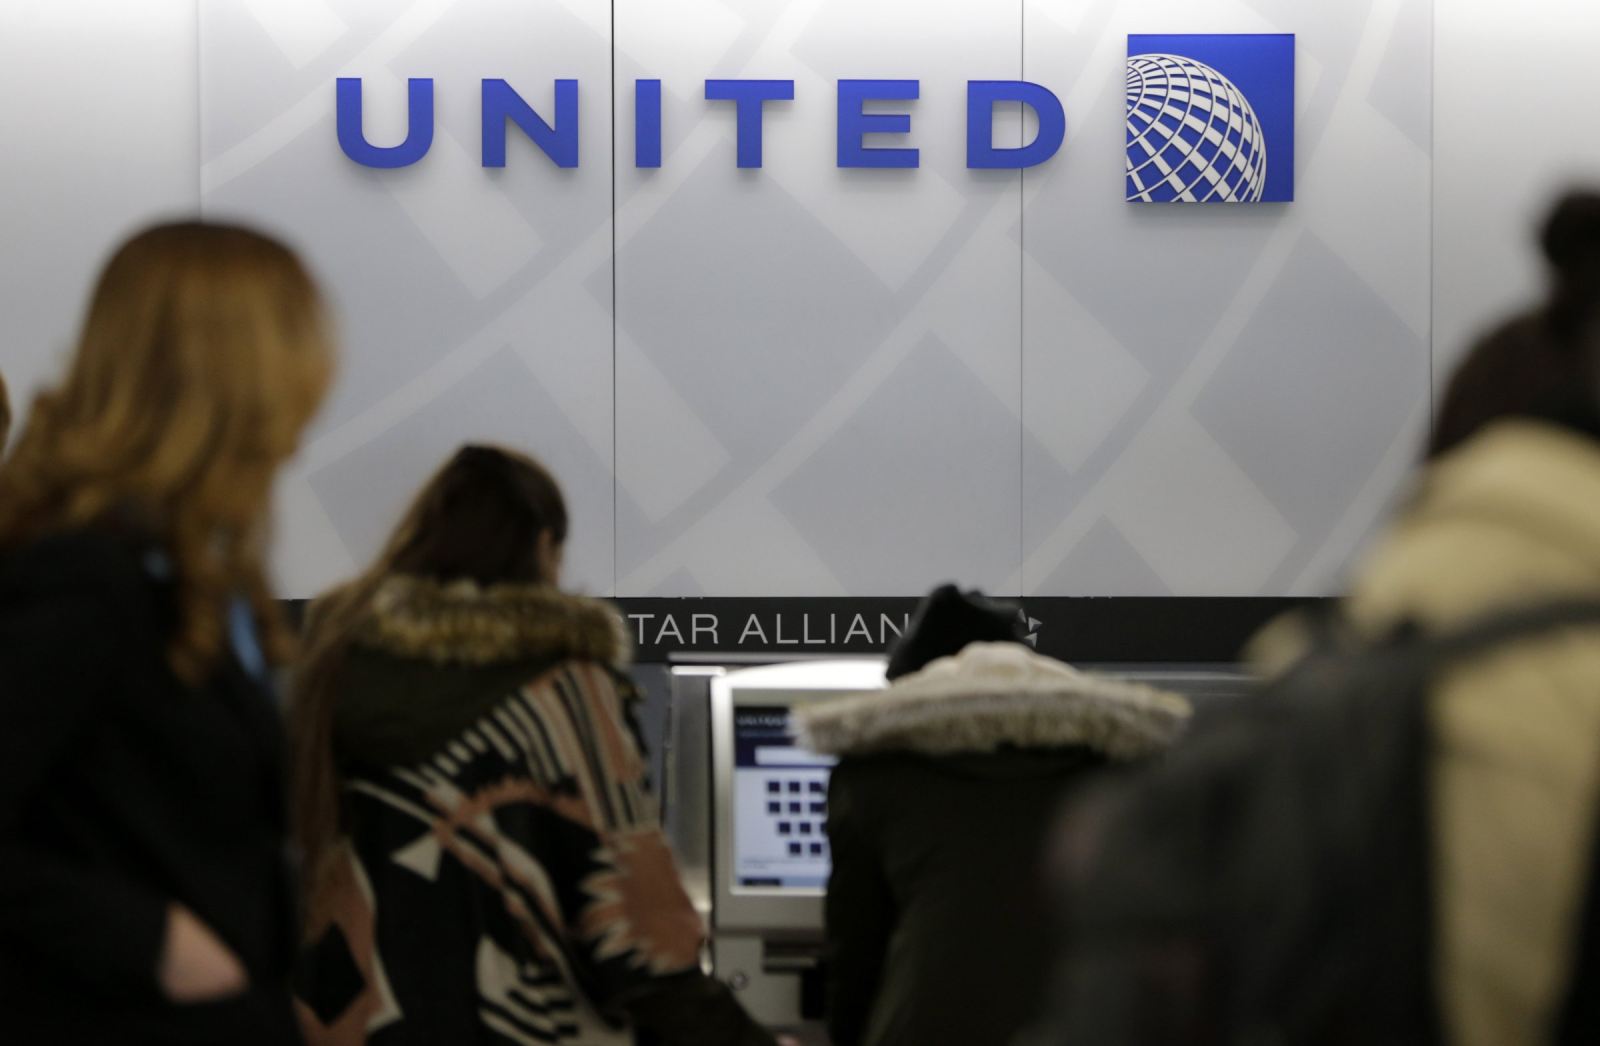 联合航空拒绝穿纤维质长筒袜女乘客登机事件始末